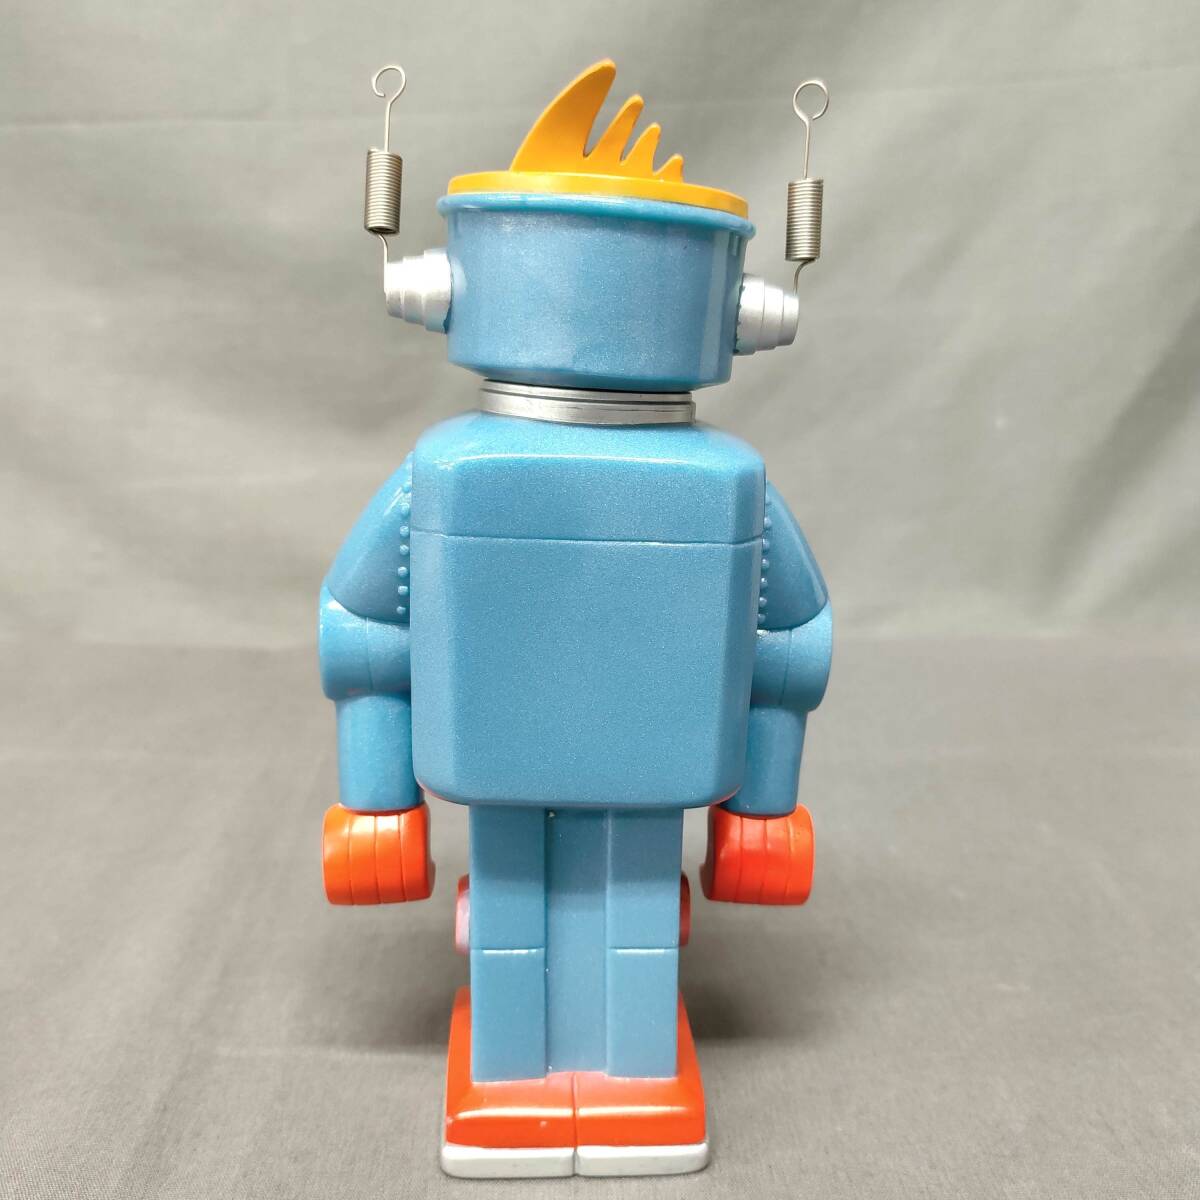 060418 263610 アートネイチャー販促物 ロボット型貯金箱 コレクション ホビー おもちゃ 人形 の画像4